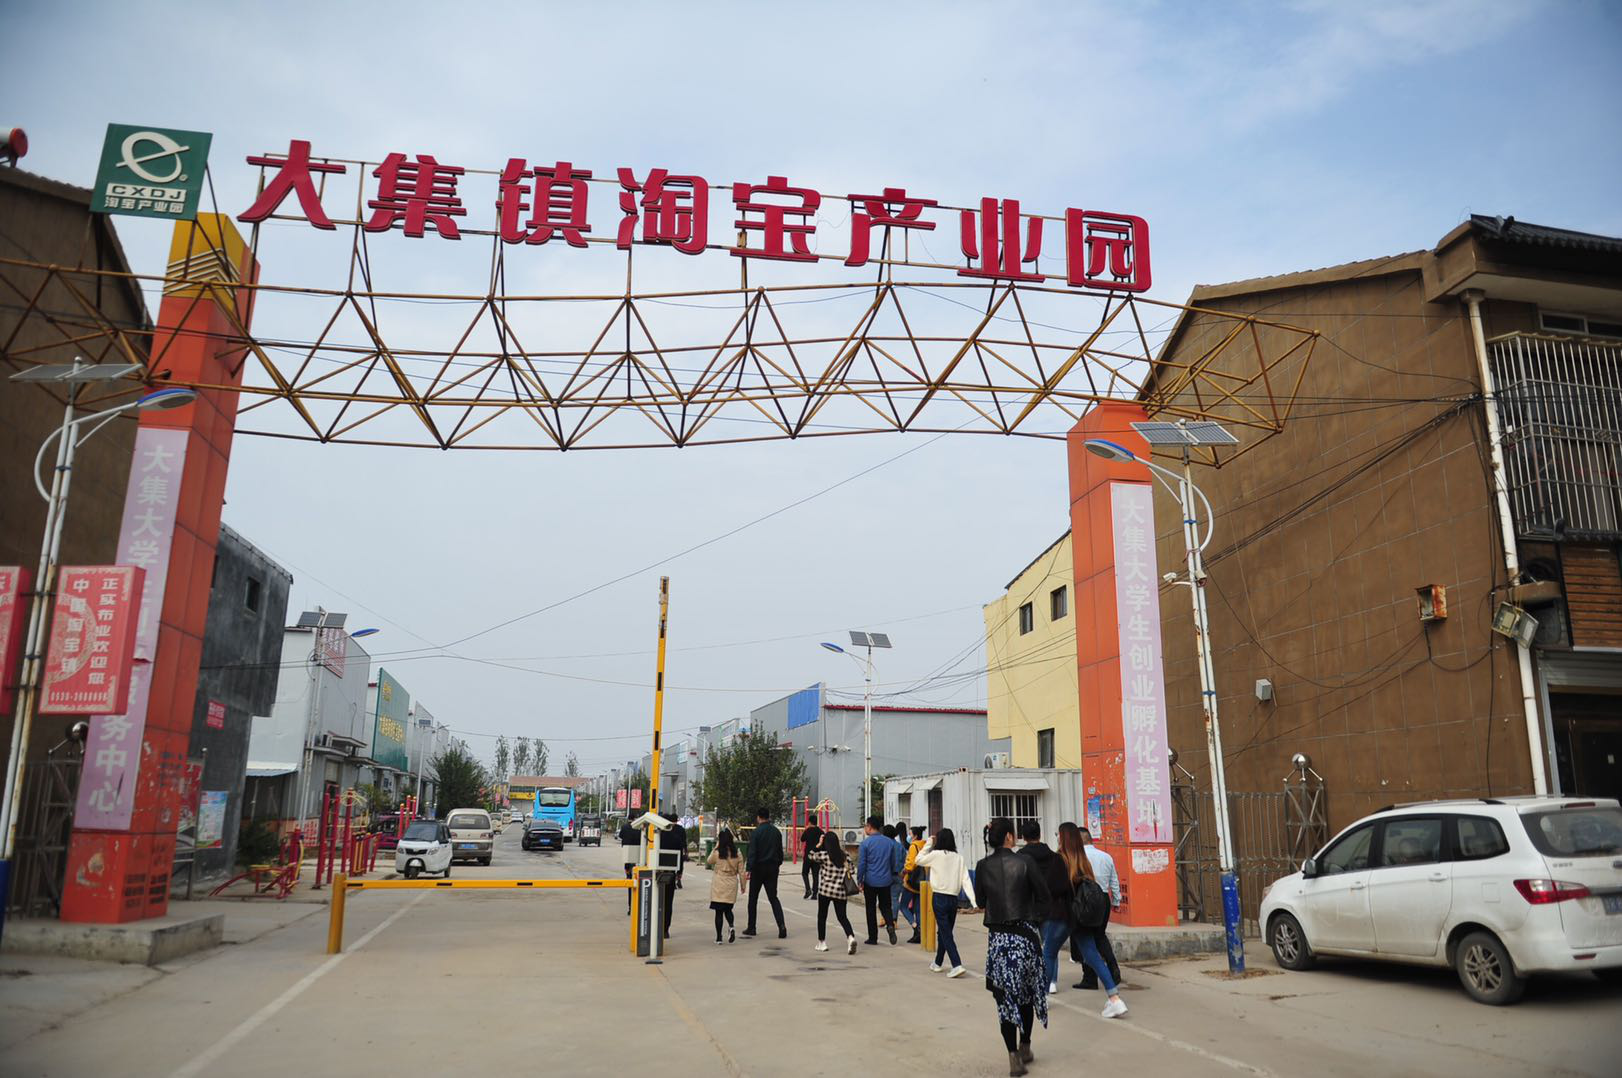 曹县大集电商产业园:年销售收入10亿元